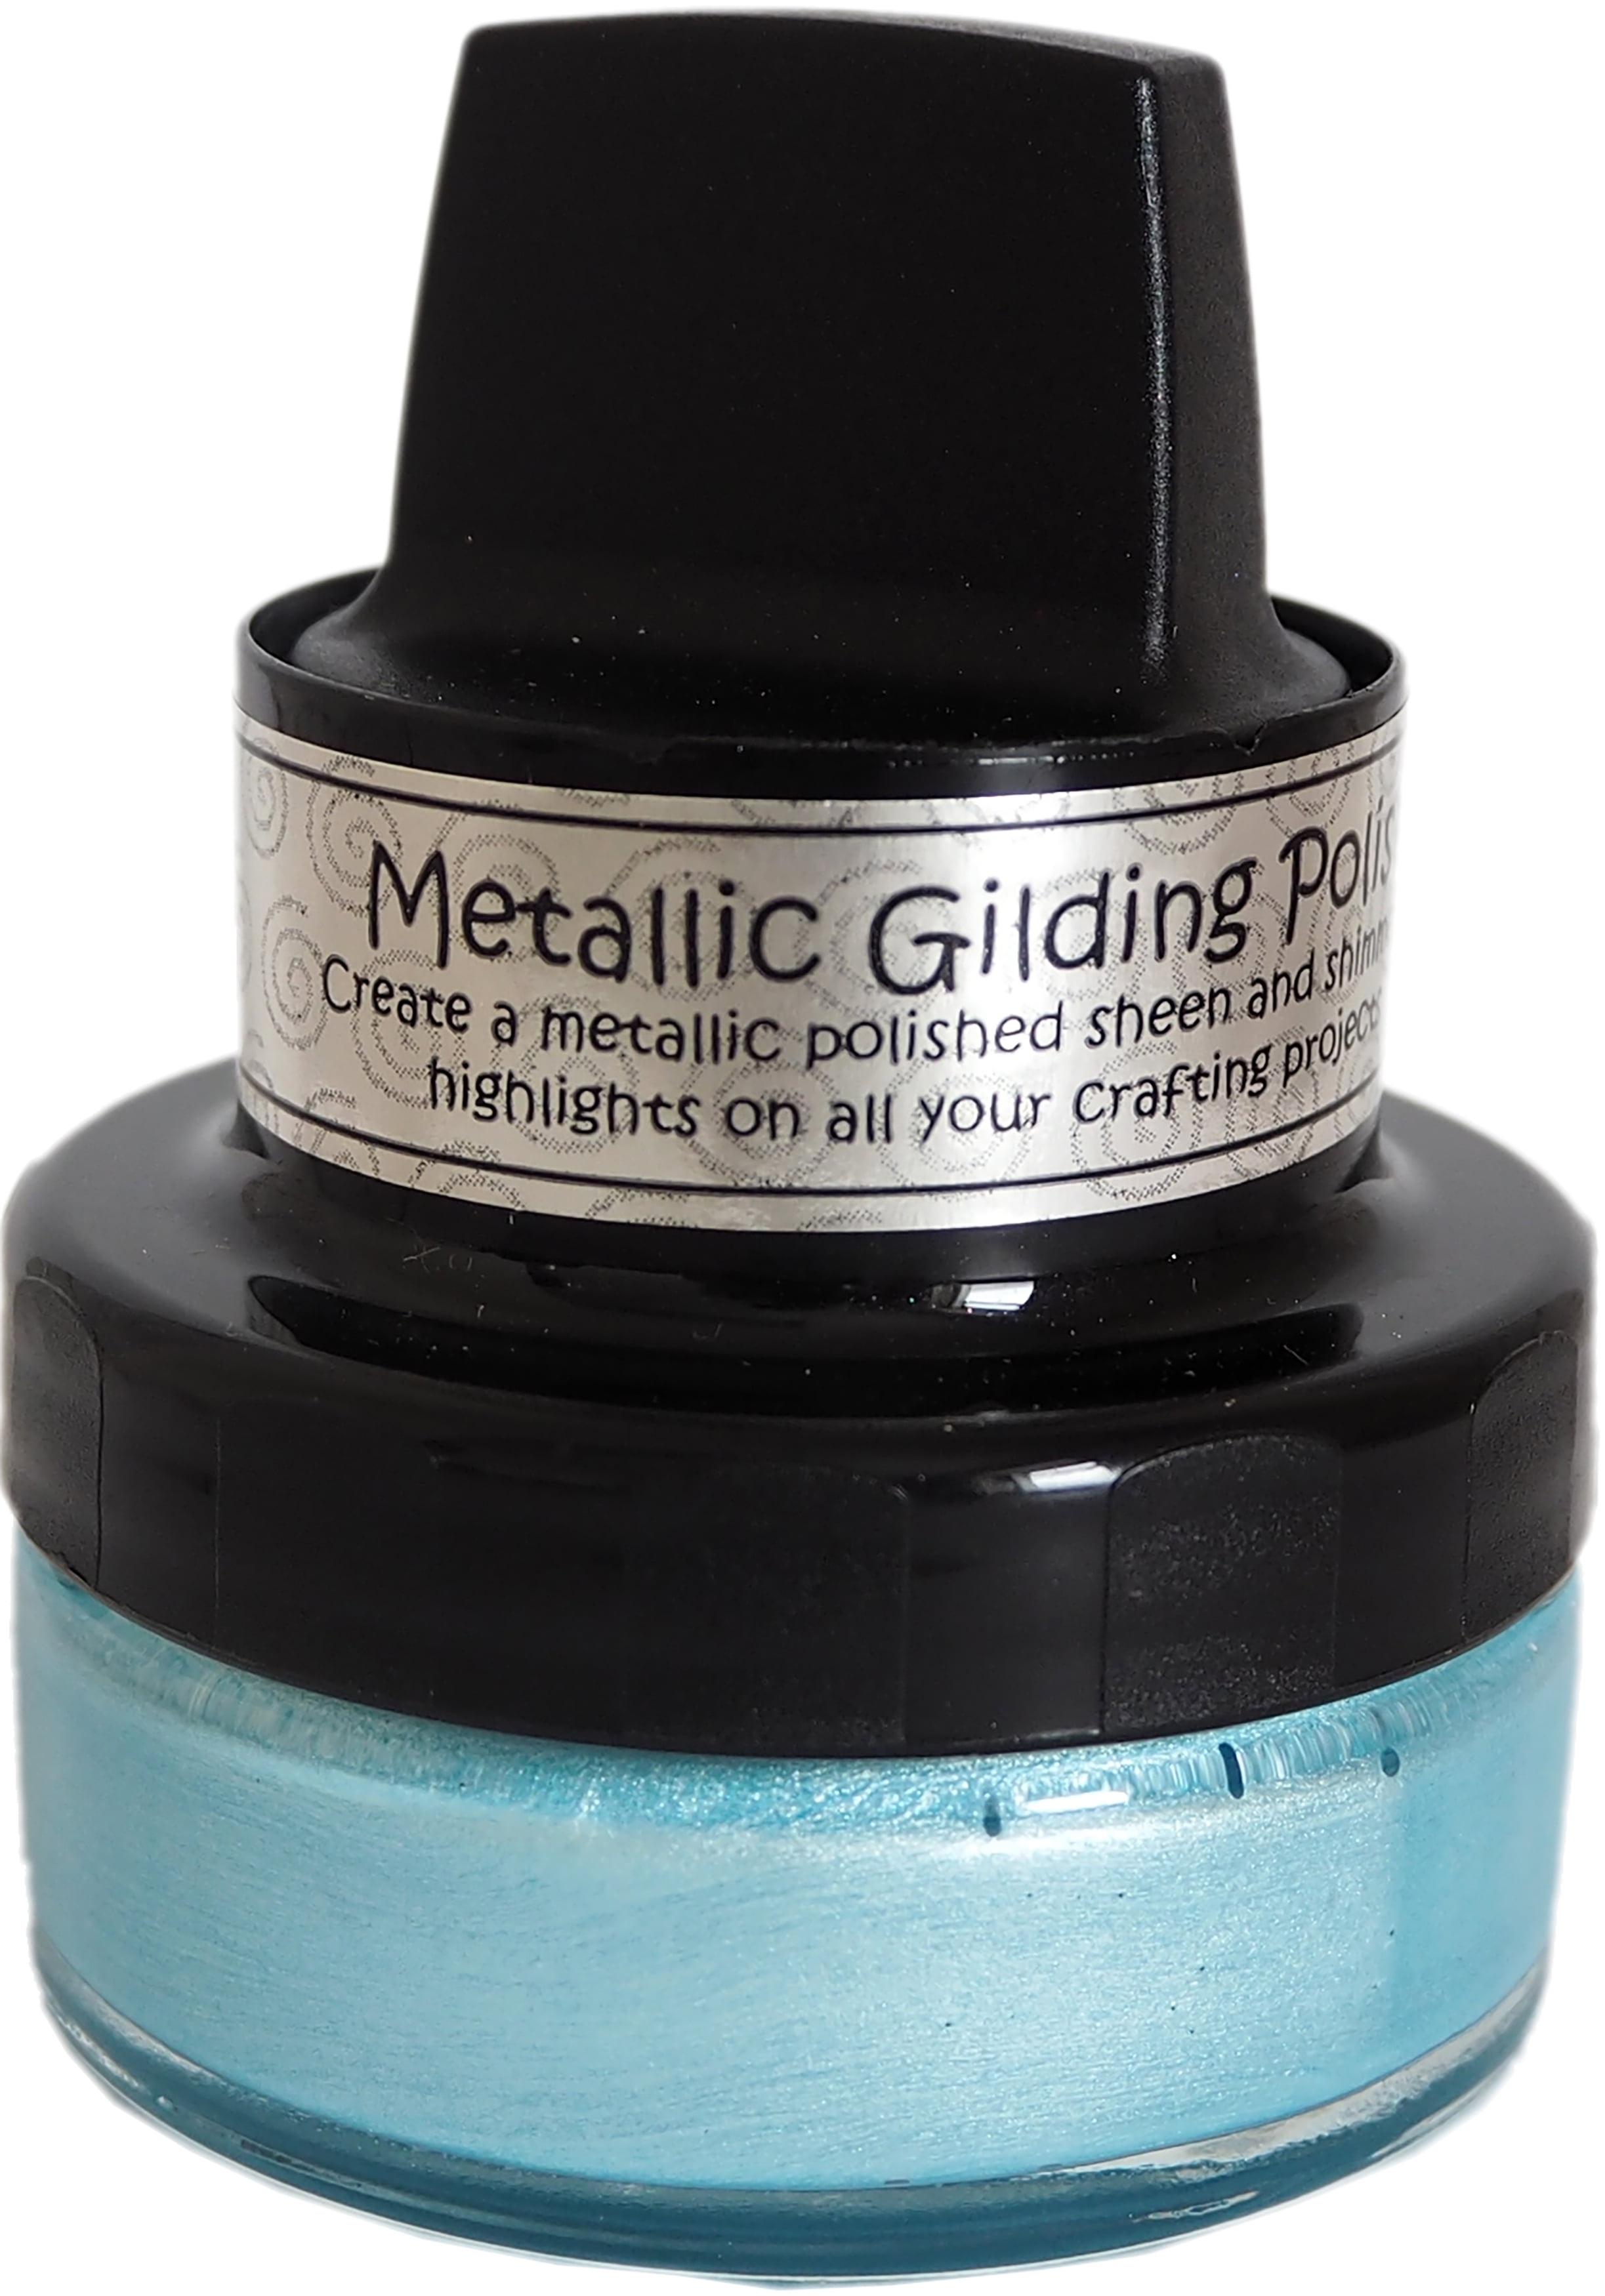 Cosmic Shimmer Metallic Gilding Polish Powder Blue 